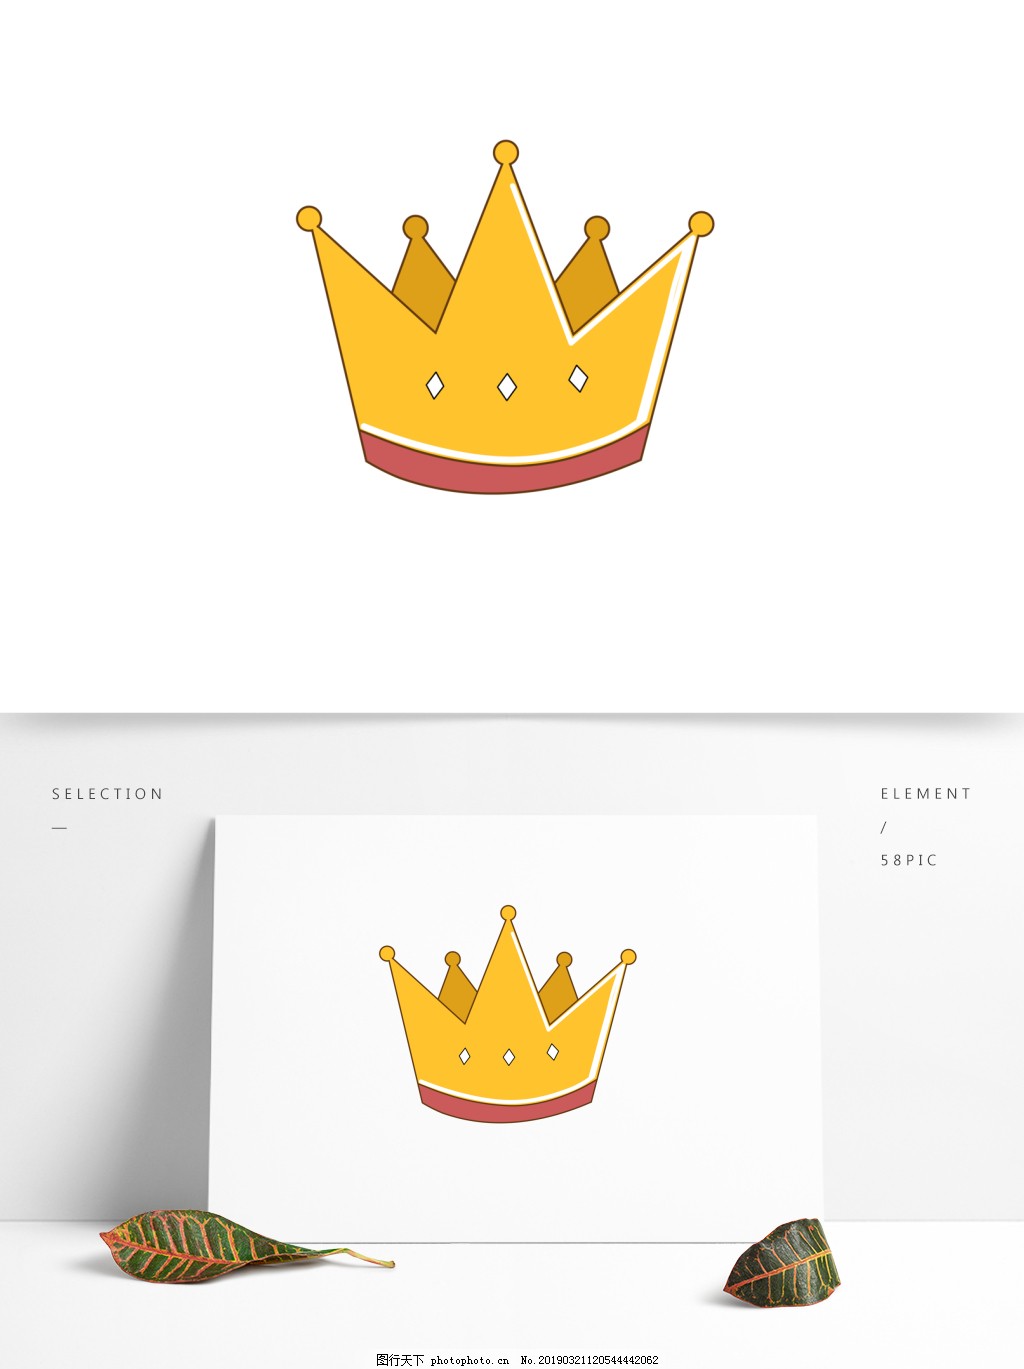 可爱的皇冠手绘皇冠卡通皇冠模板免费下载_eps格式_650像素_编号40948930-千图网